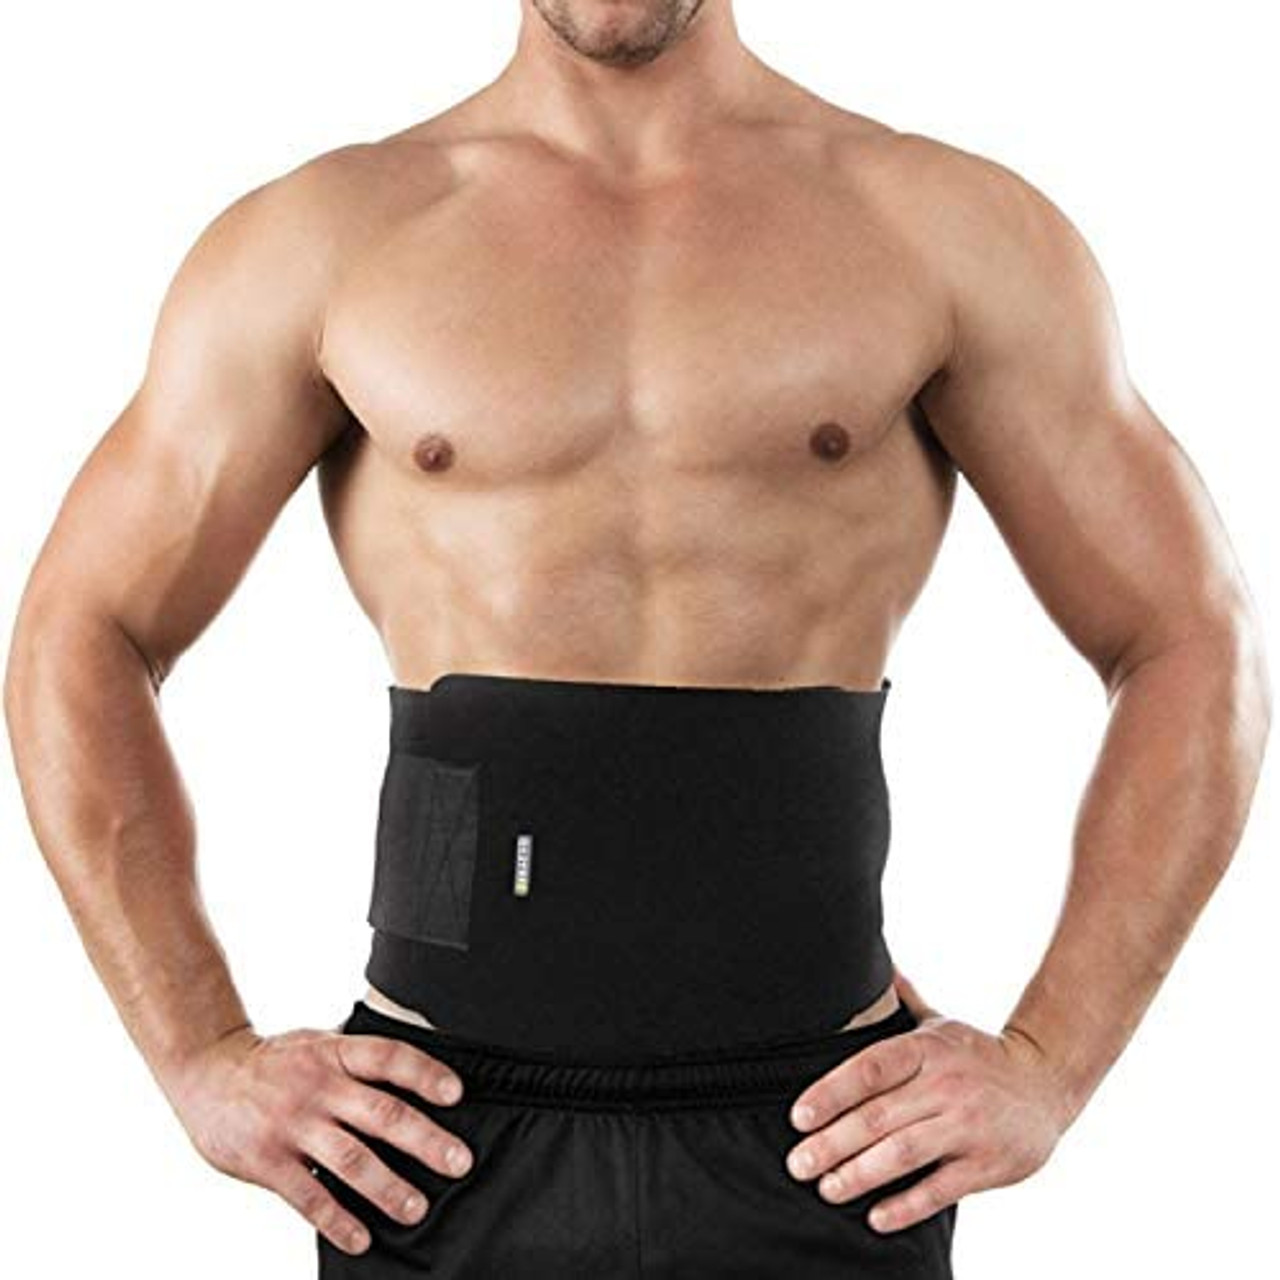 Hot Shaper Belt For Women Men Girls, Hot Shapper Belt For Hips Belly Fat  Weight Loss Back Pain